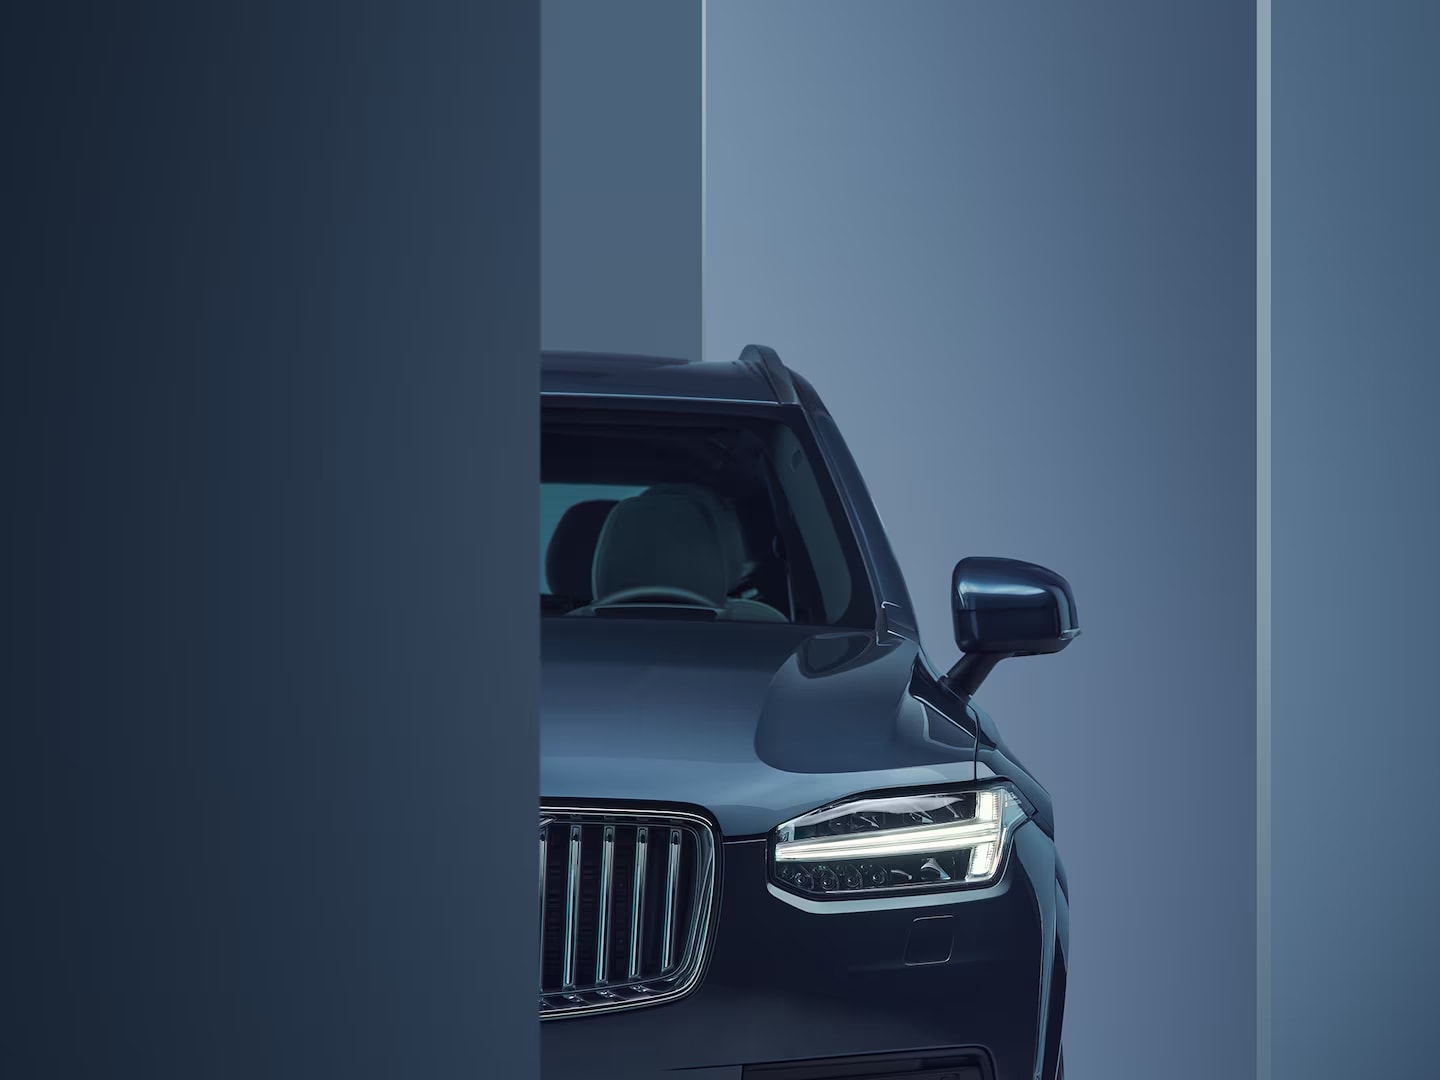 Dettaglio del design dei fari anteriori della Volvo XC90 plug-in hybrid.